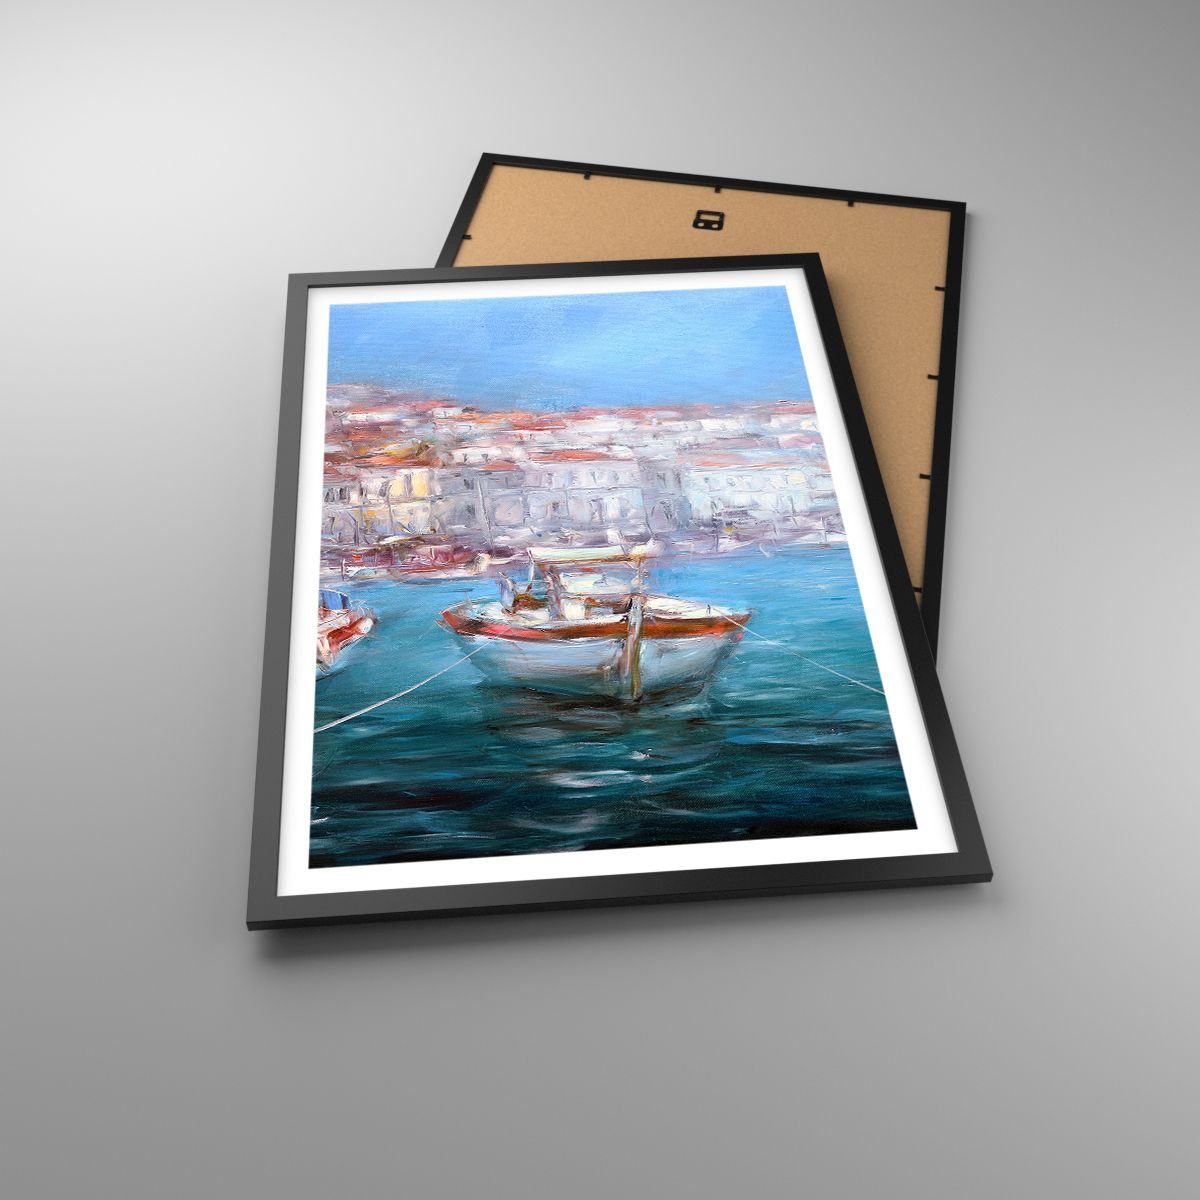 Poster Hafenstadt, Poster Die Architektur, Poster Griechenland, Poster Boote, Poster Reisen